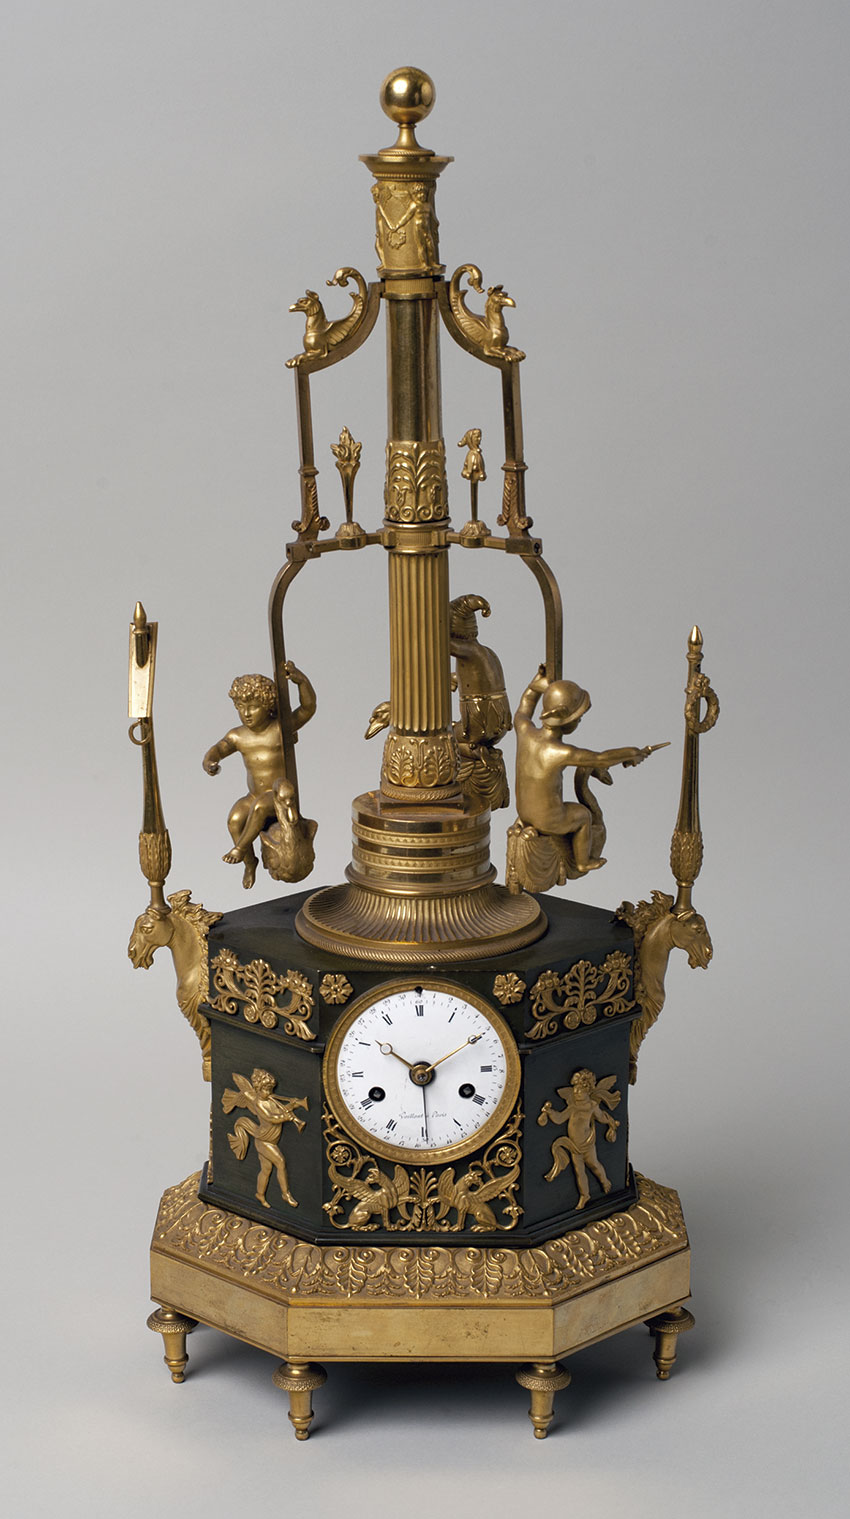 18_Carrusel. Reloj frances de sobremesa automata en bronce dorado por Vaillan. Circa 1805. 54,5 x 23,5 x 18 cm. Nº Inv. R.A. 643